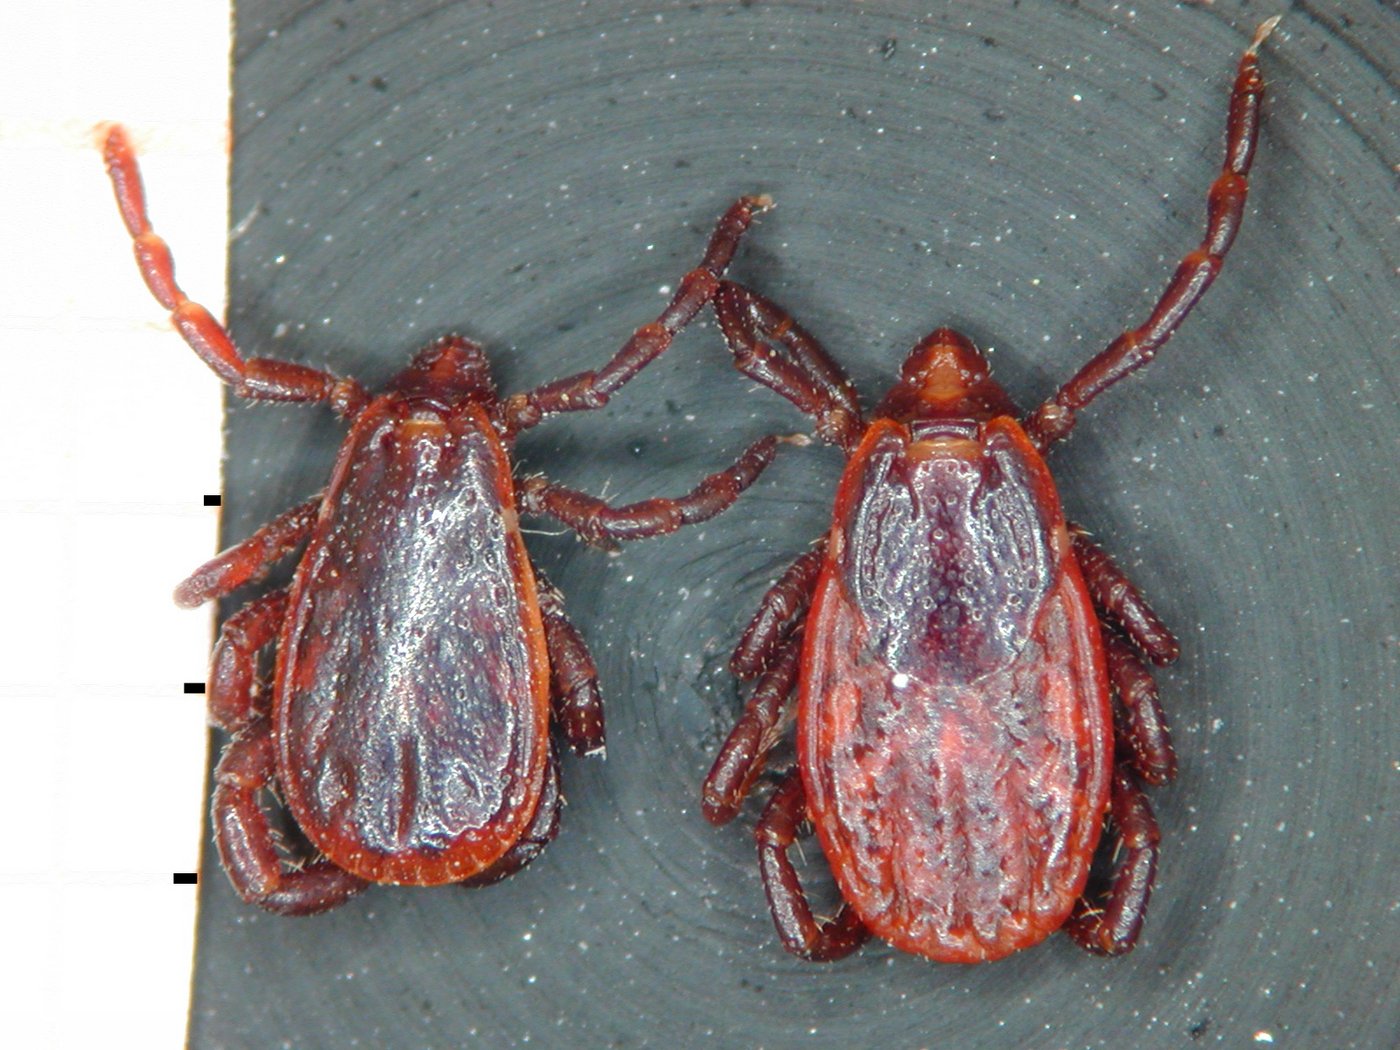 Zwei Rhipicephalus Sanguineus von oben betrachtet. Sie sind von rötlicher Färbung